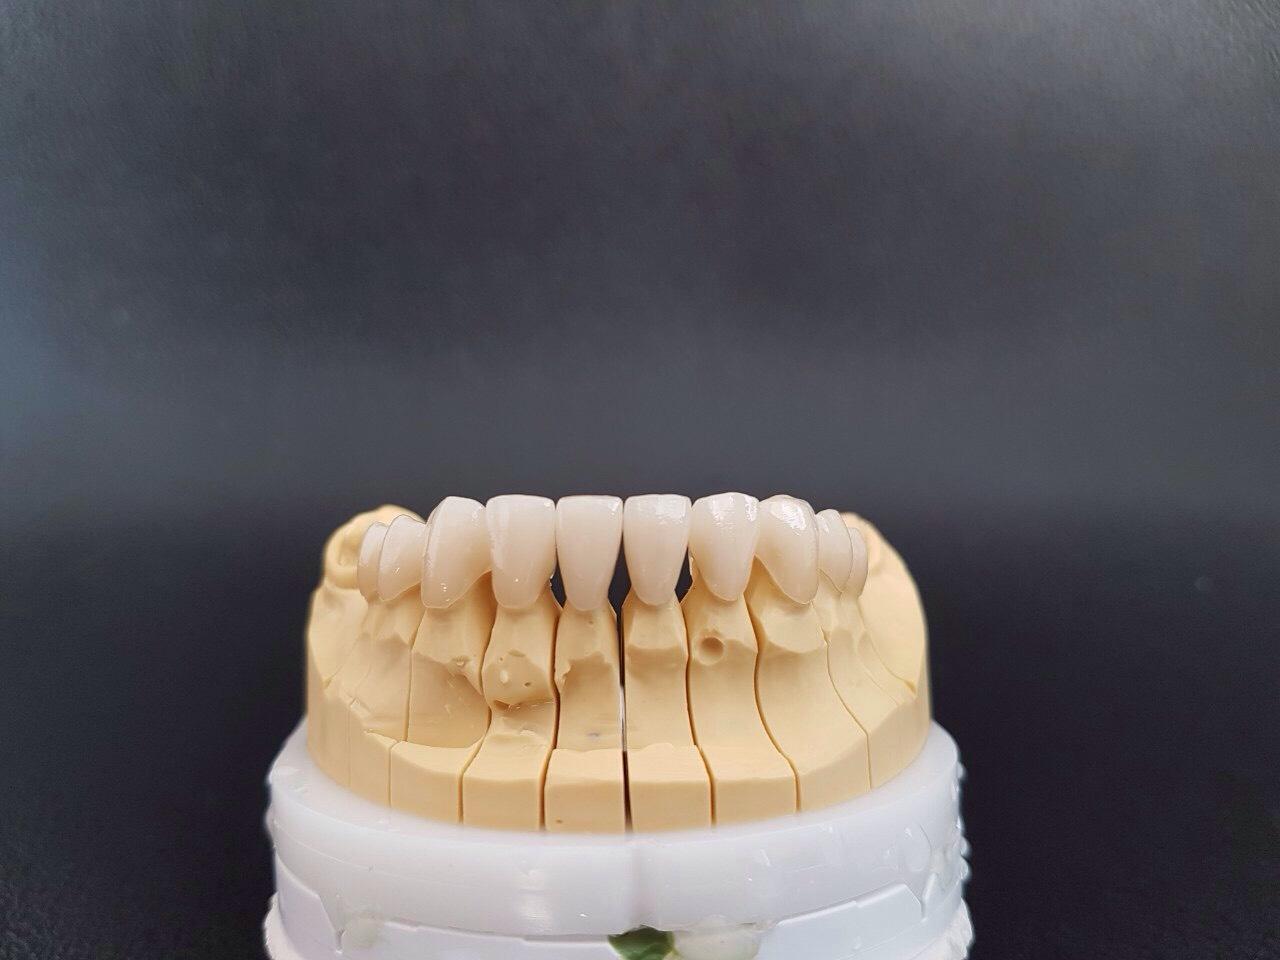 e-max-Dental-crowns